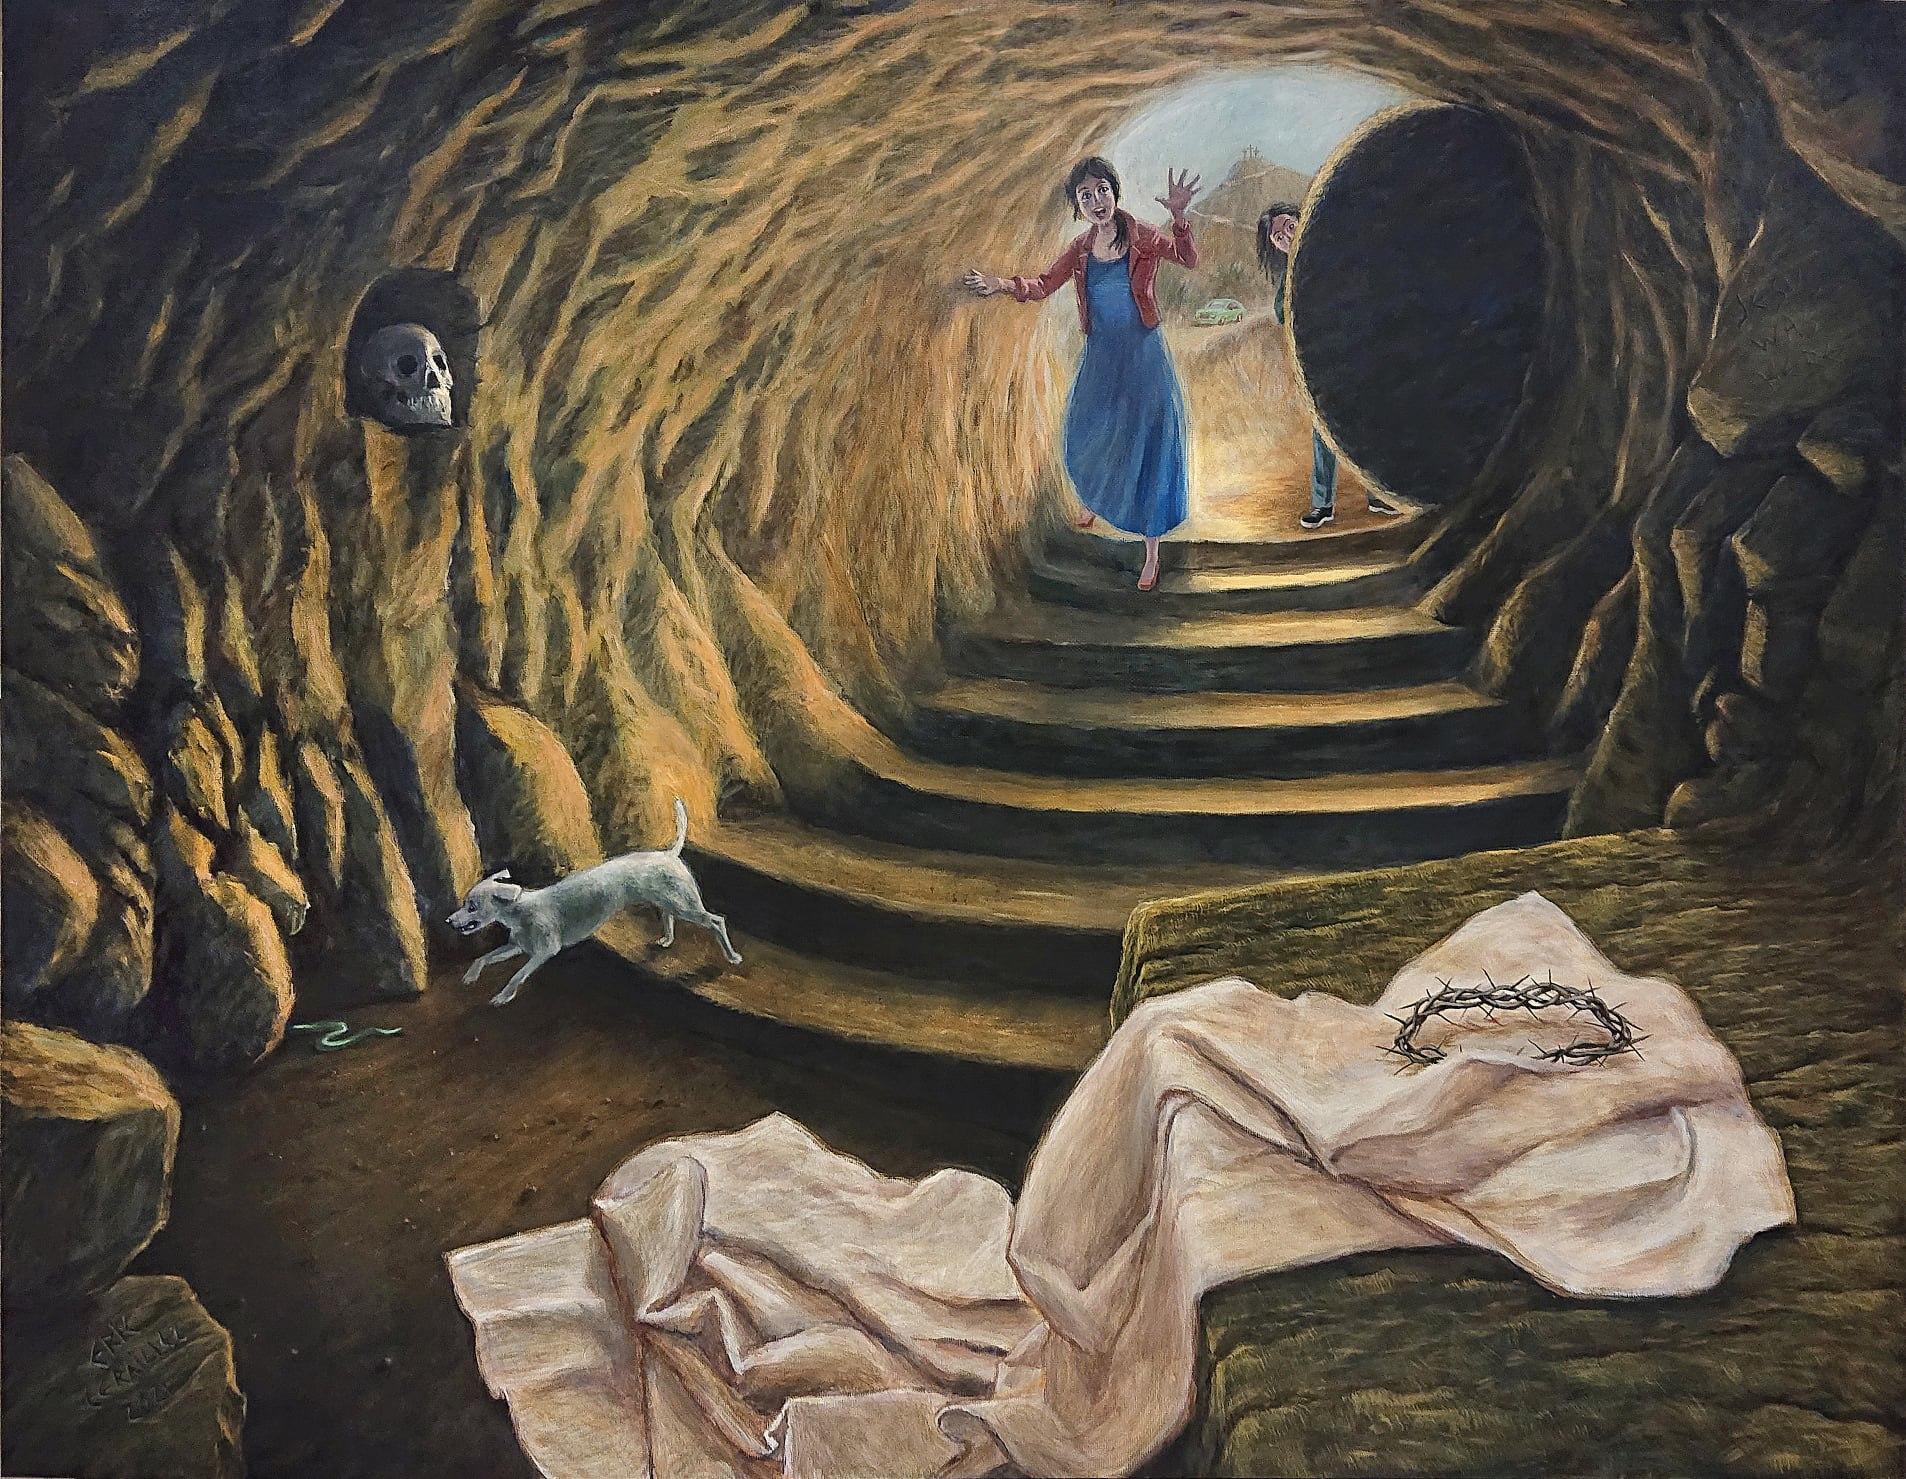 Jeesuksen tyhjä hauta, jonka suulta on kivi vieritetty pois. Haudassa käärinliina ja orjantappurakruunu